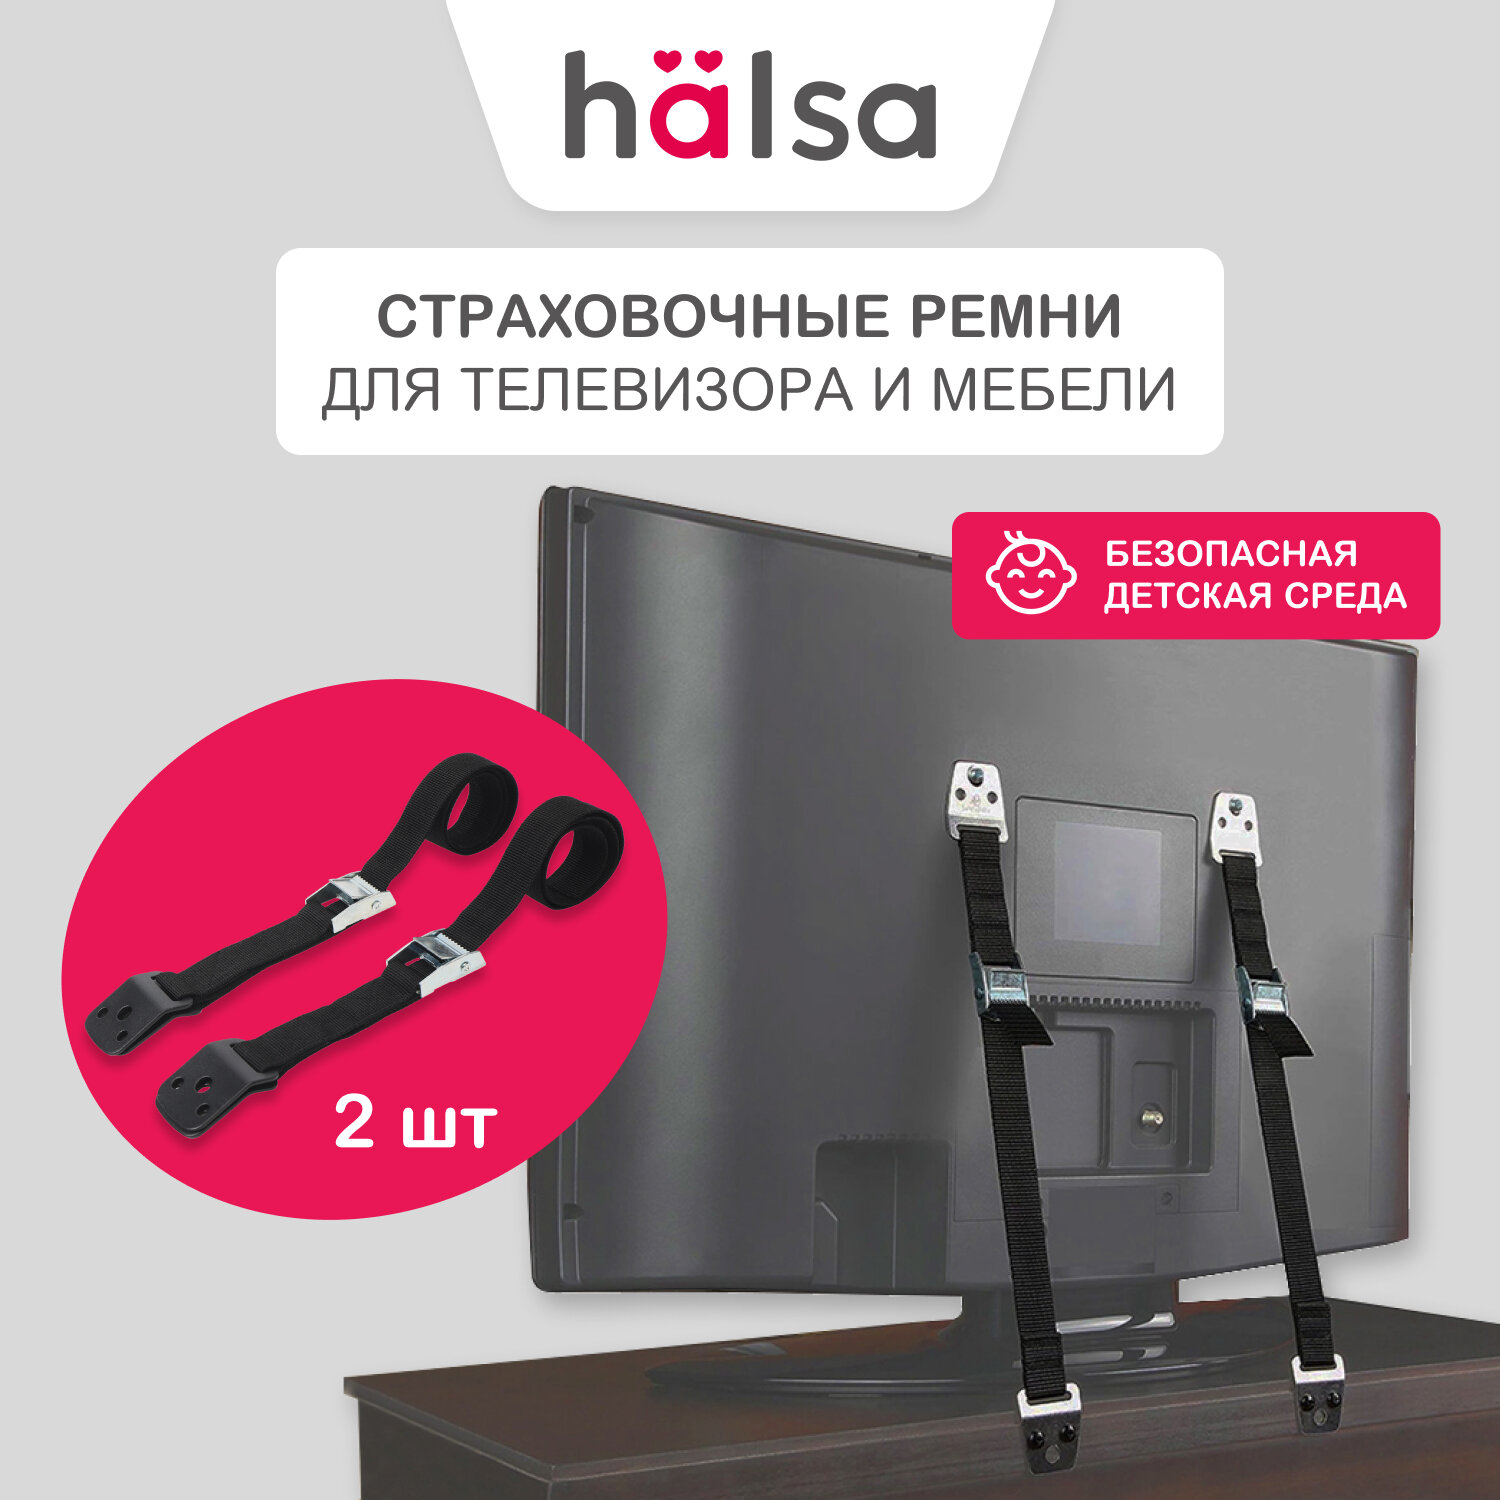 Страховочные регулируемые ремни для телевизора и мебели HALSA в комплекте с креплением 70 см